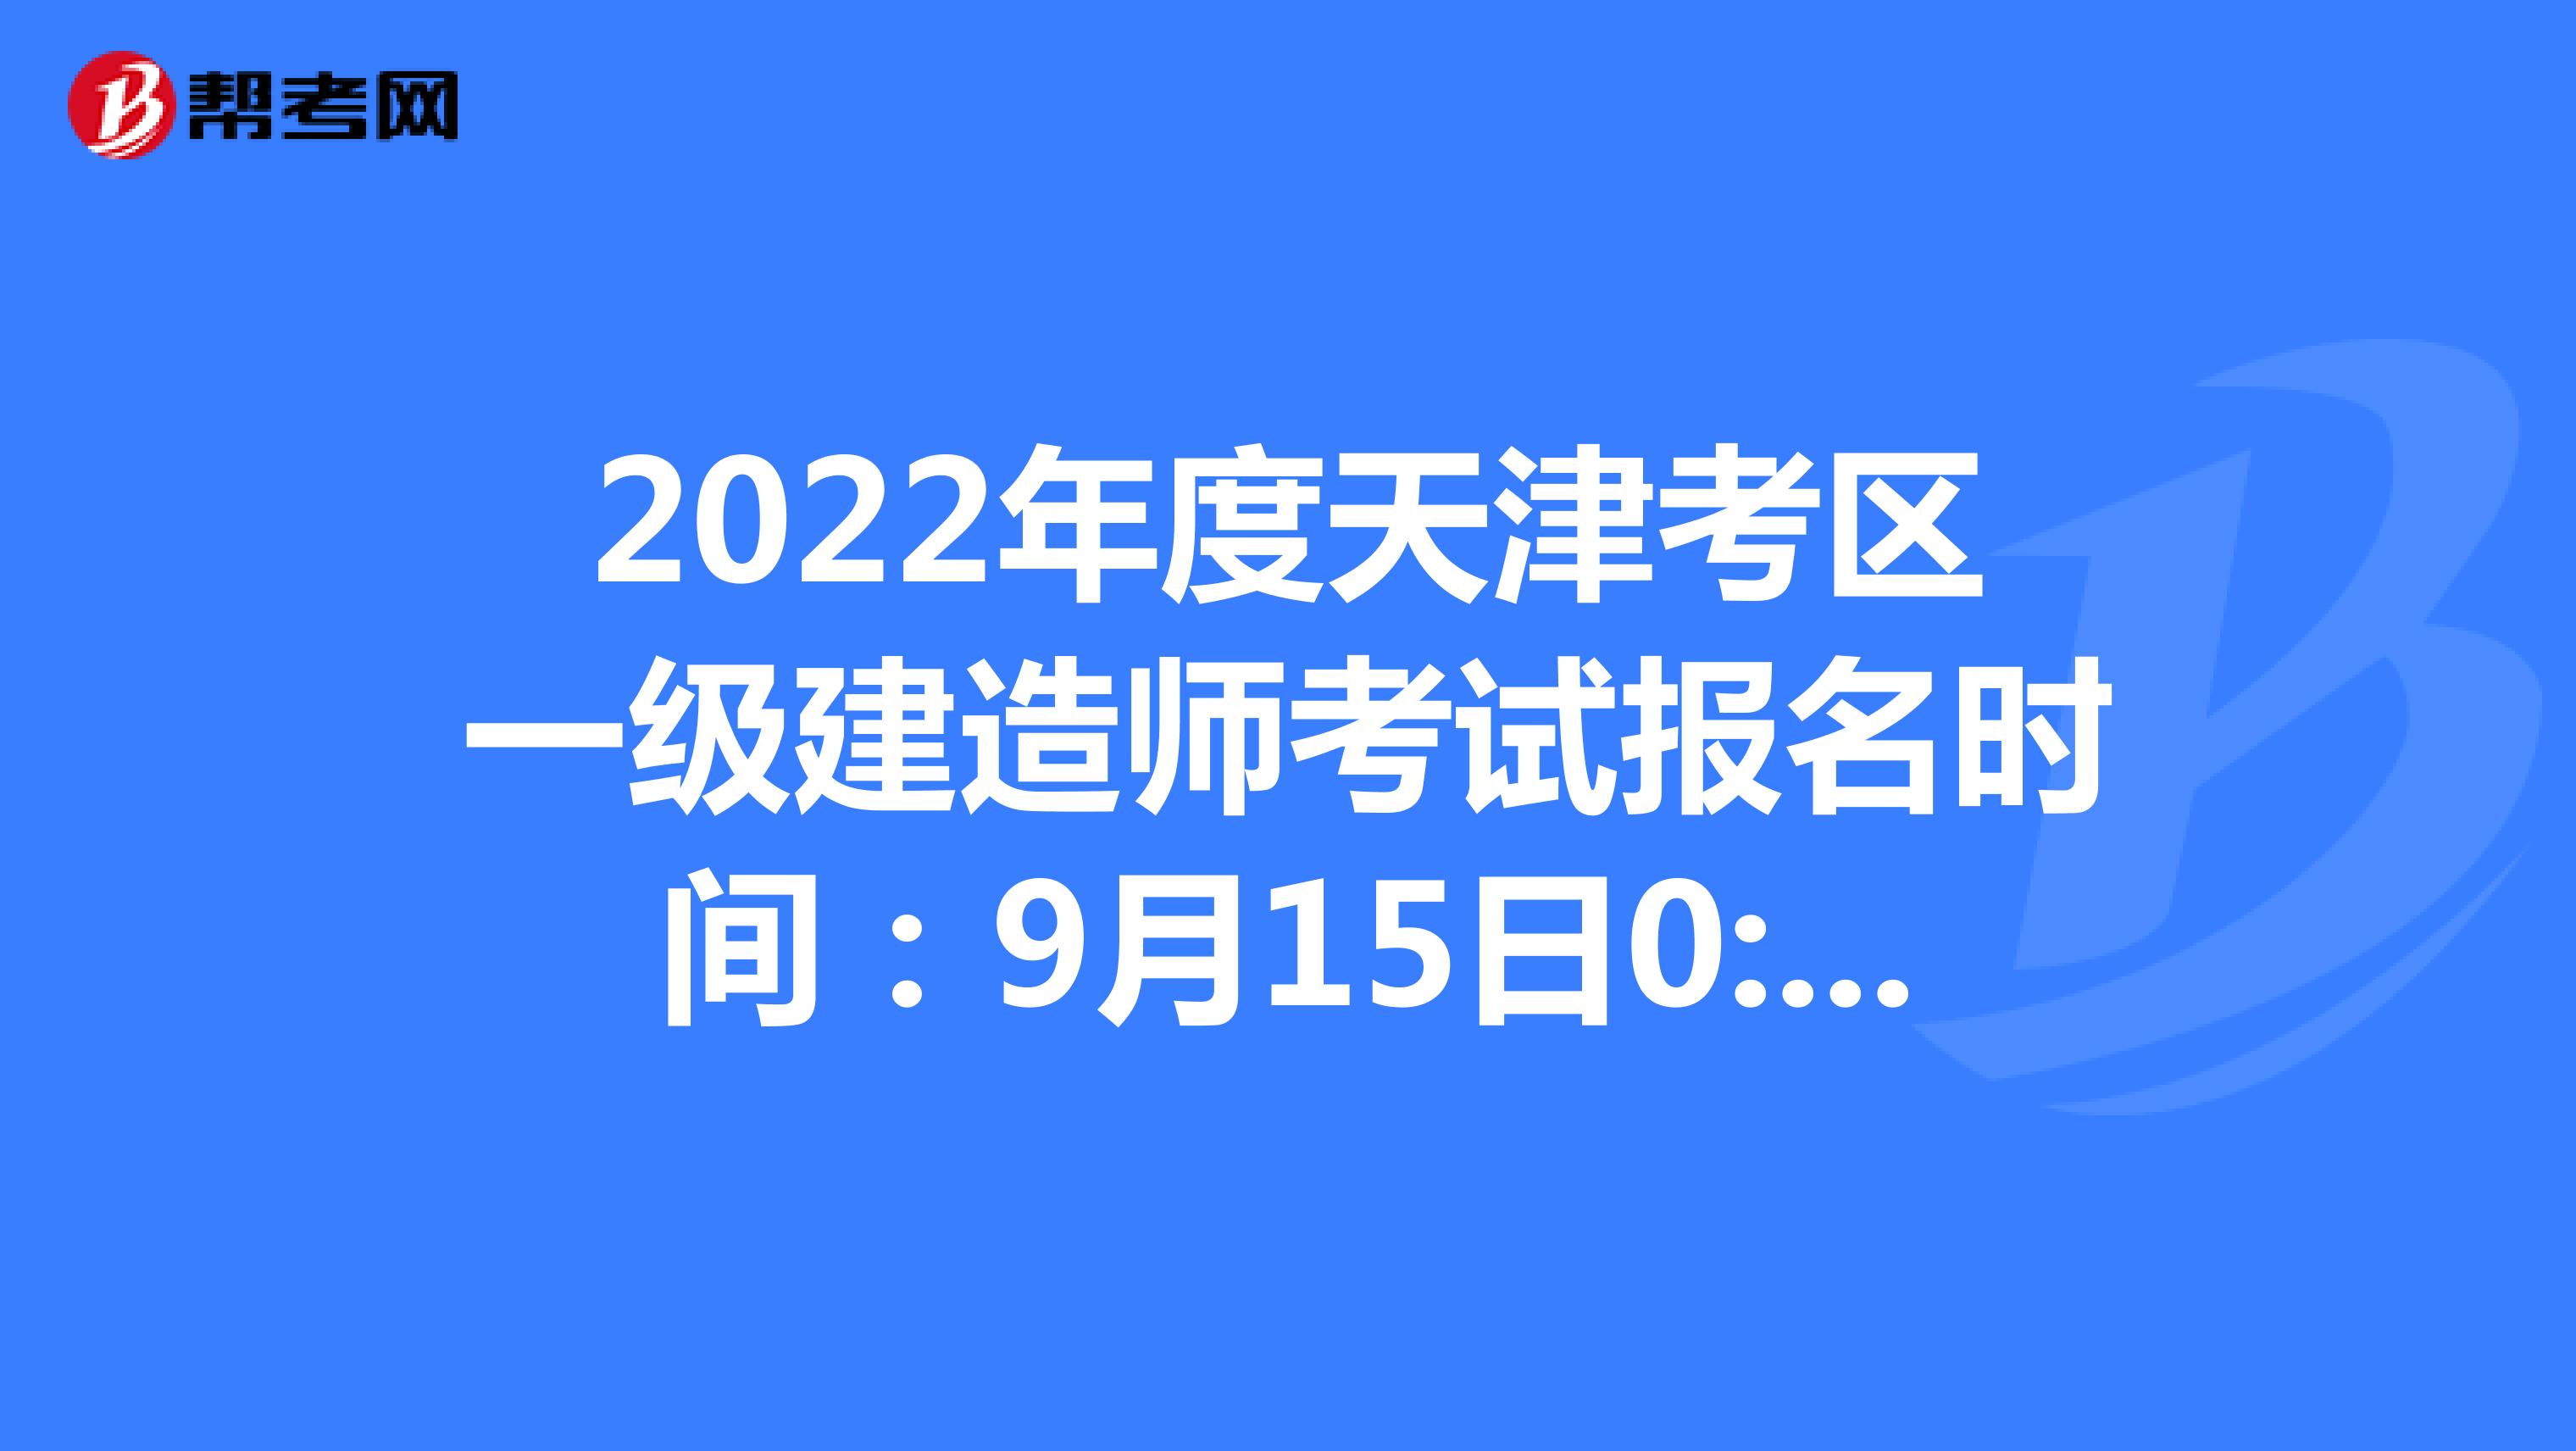 2022年度天津考区一级建造师考试报名时间：9月15日0:00至9月21日24:00